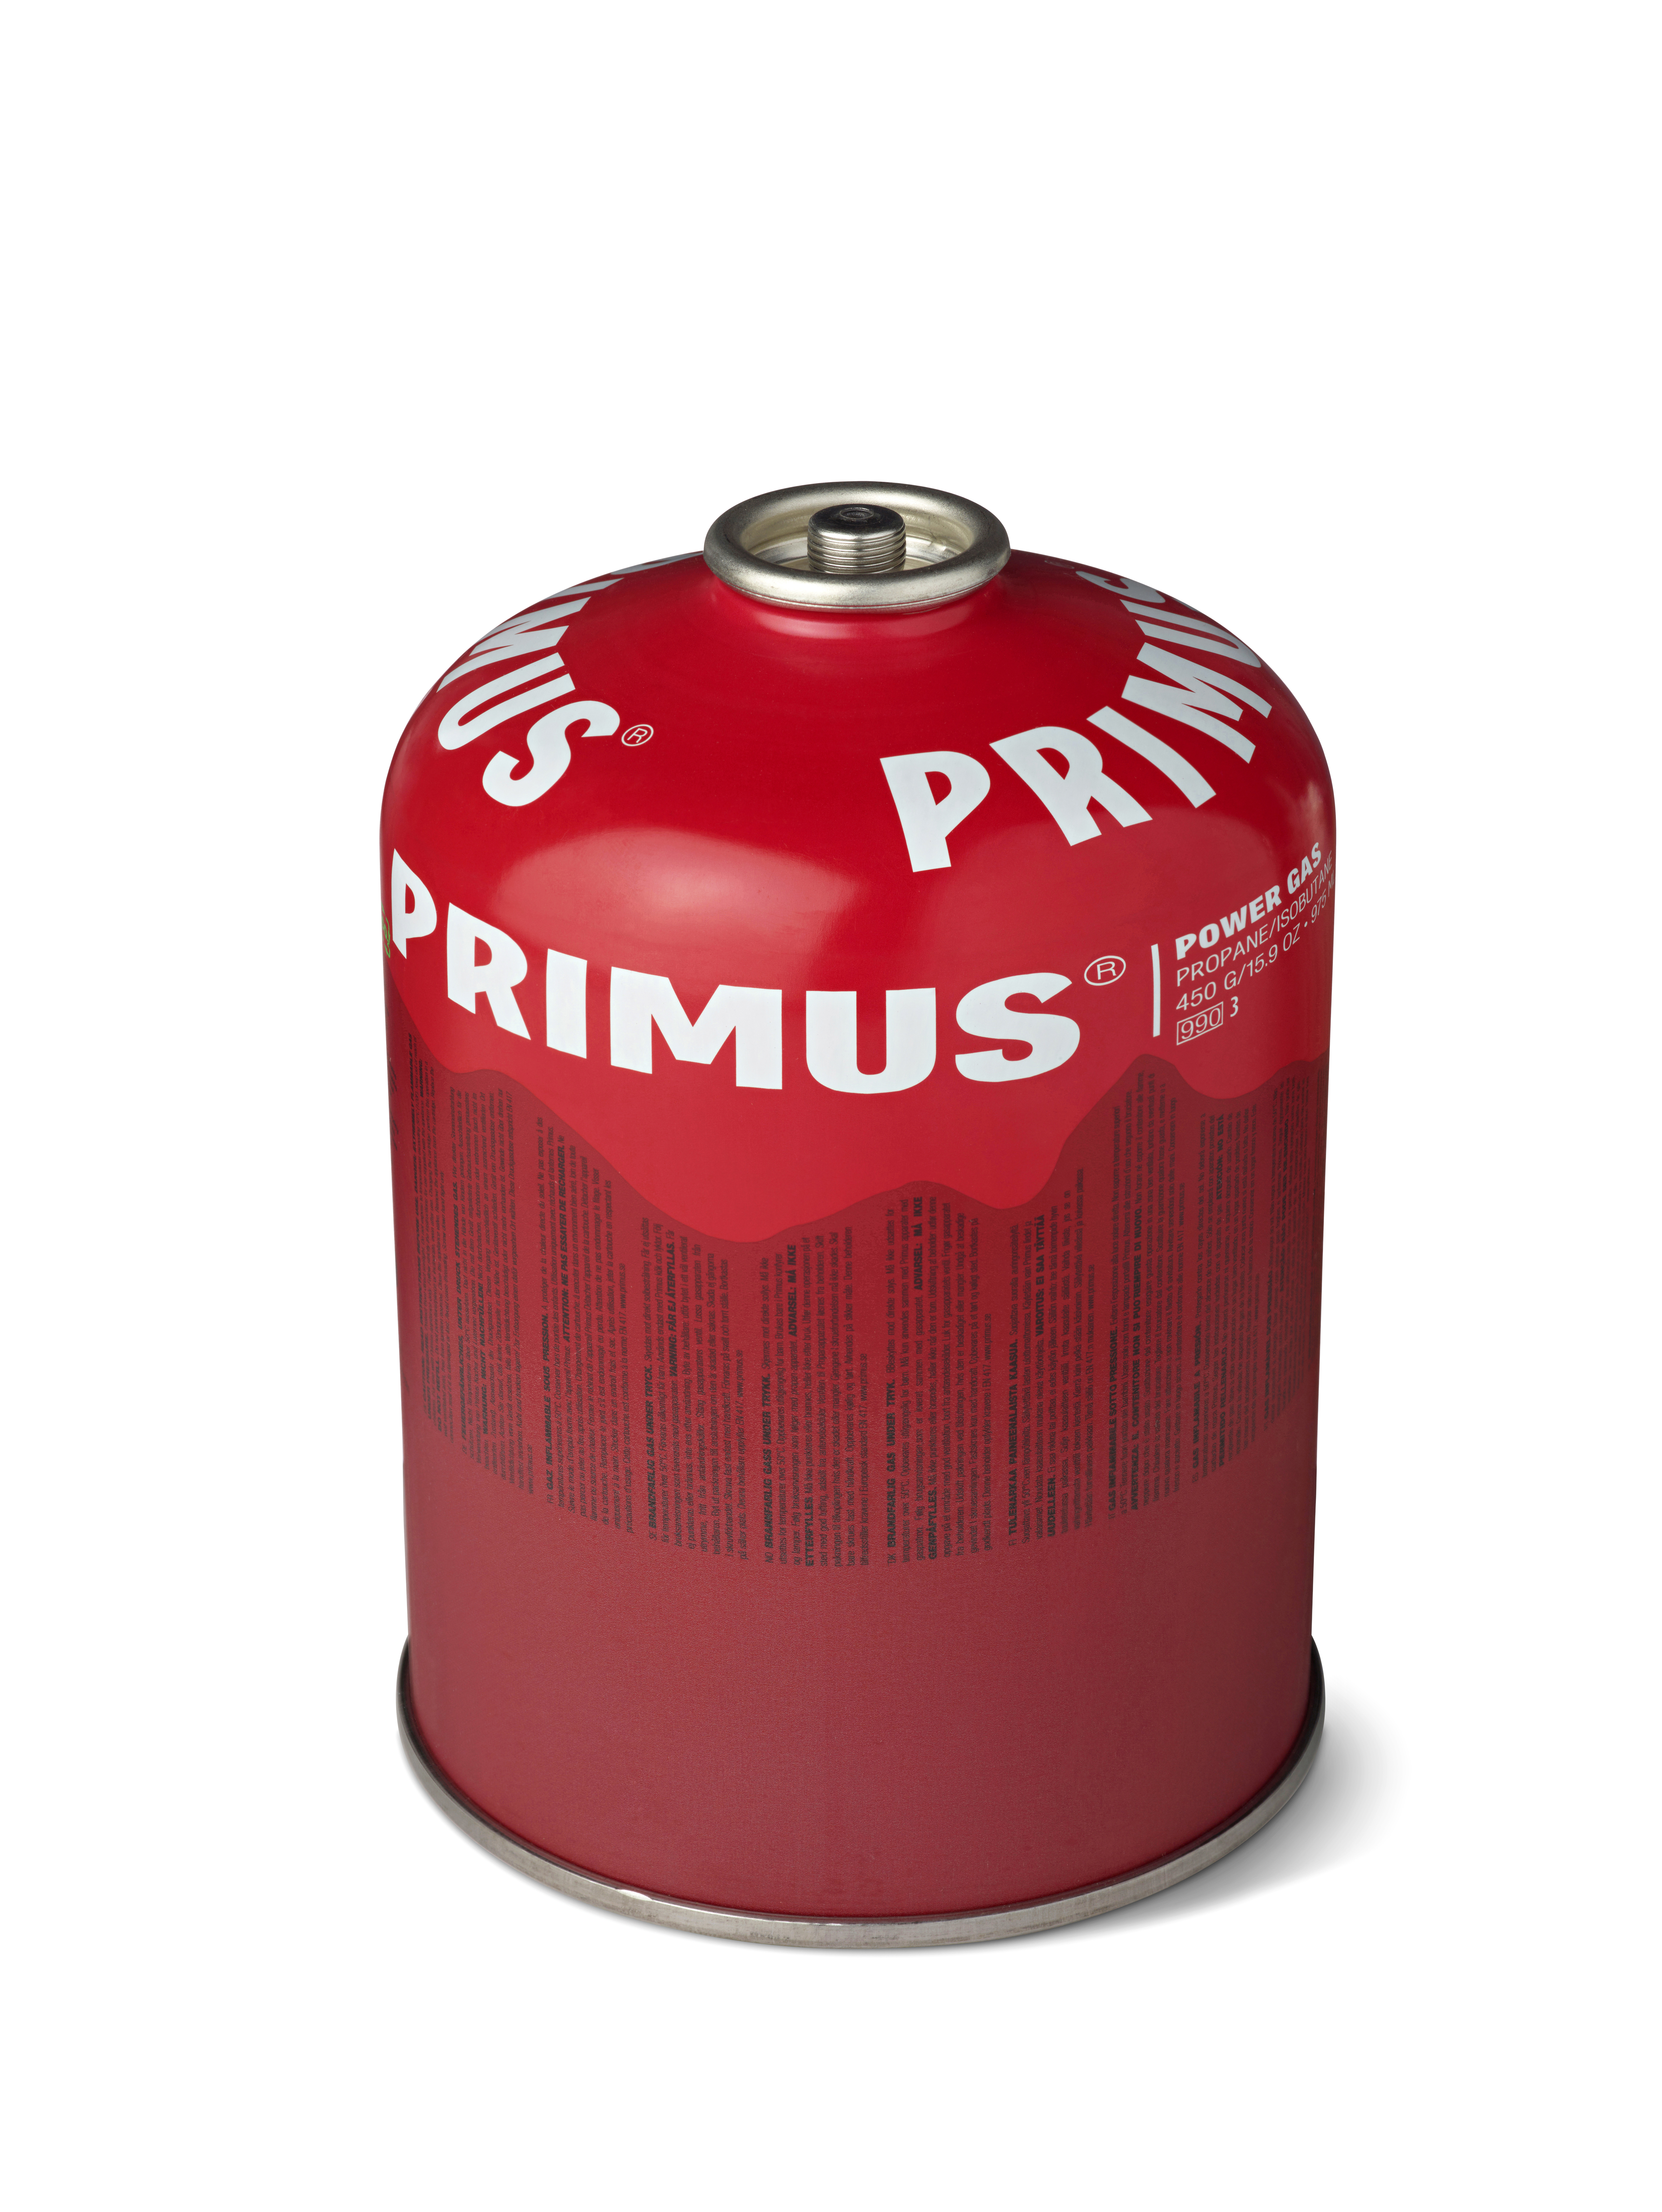 Primus 'Power Gas' Schraubkartusche kalte Jahreszeit